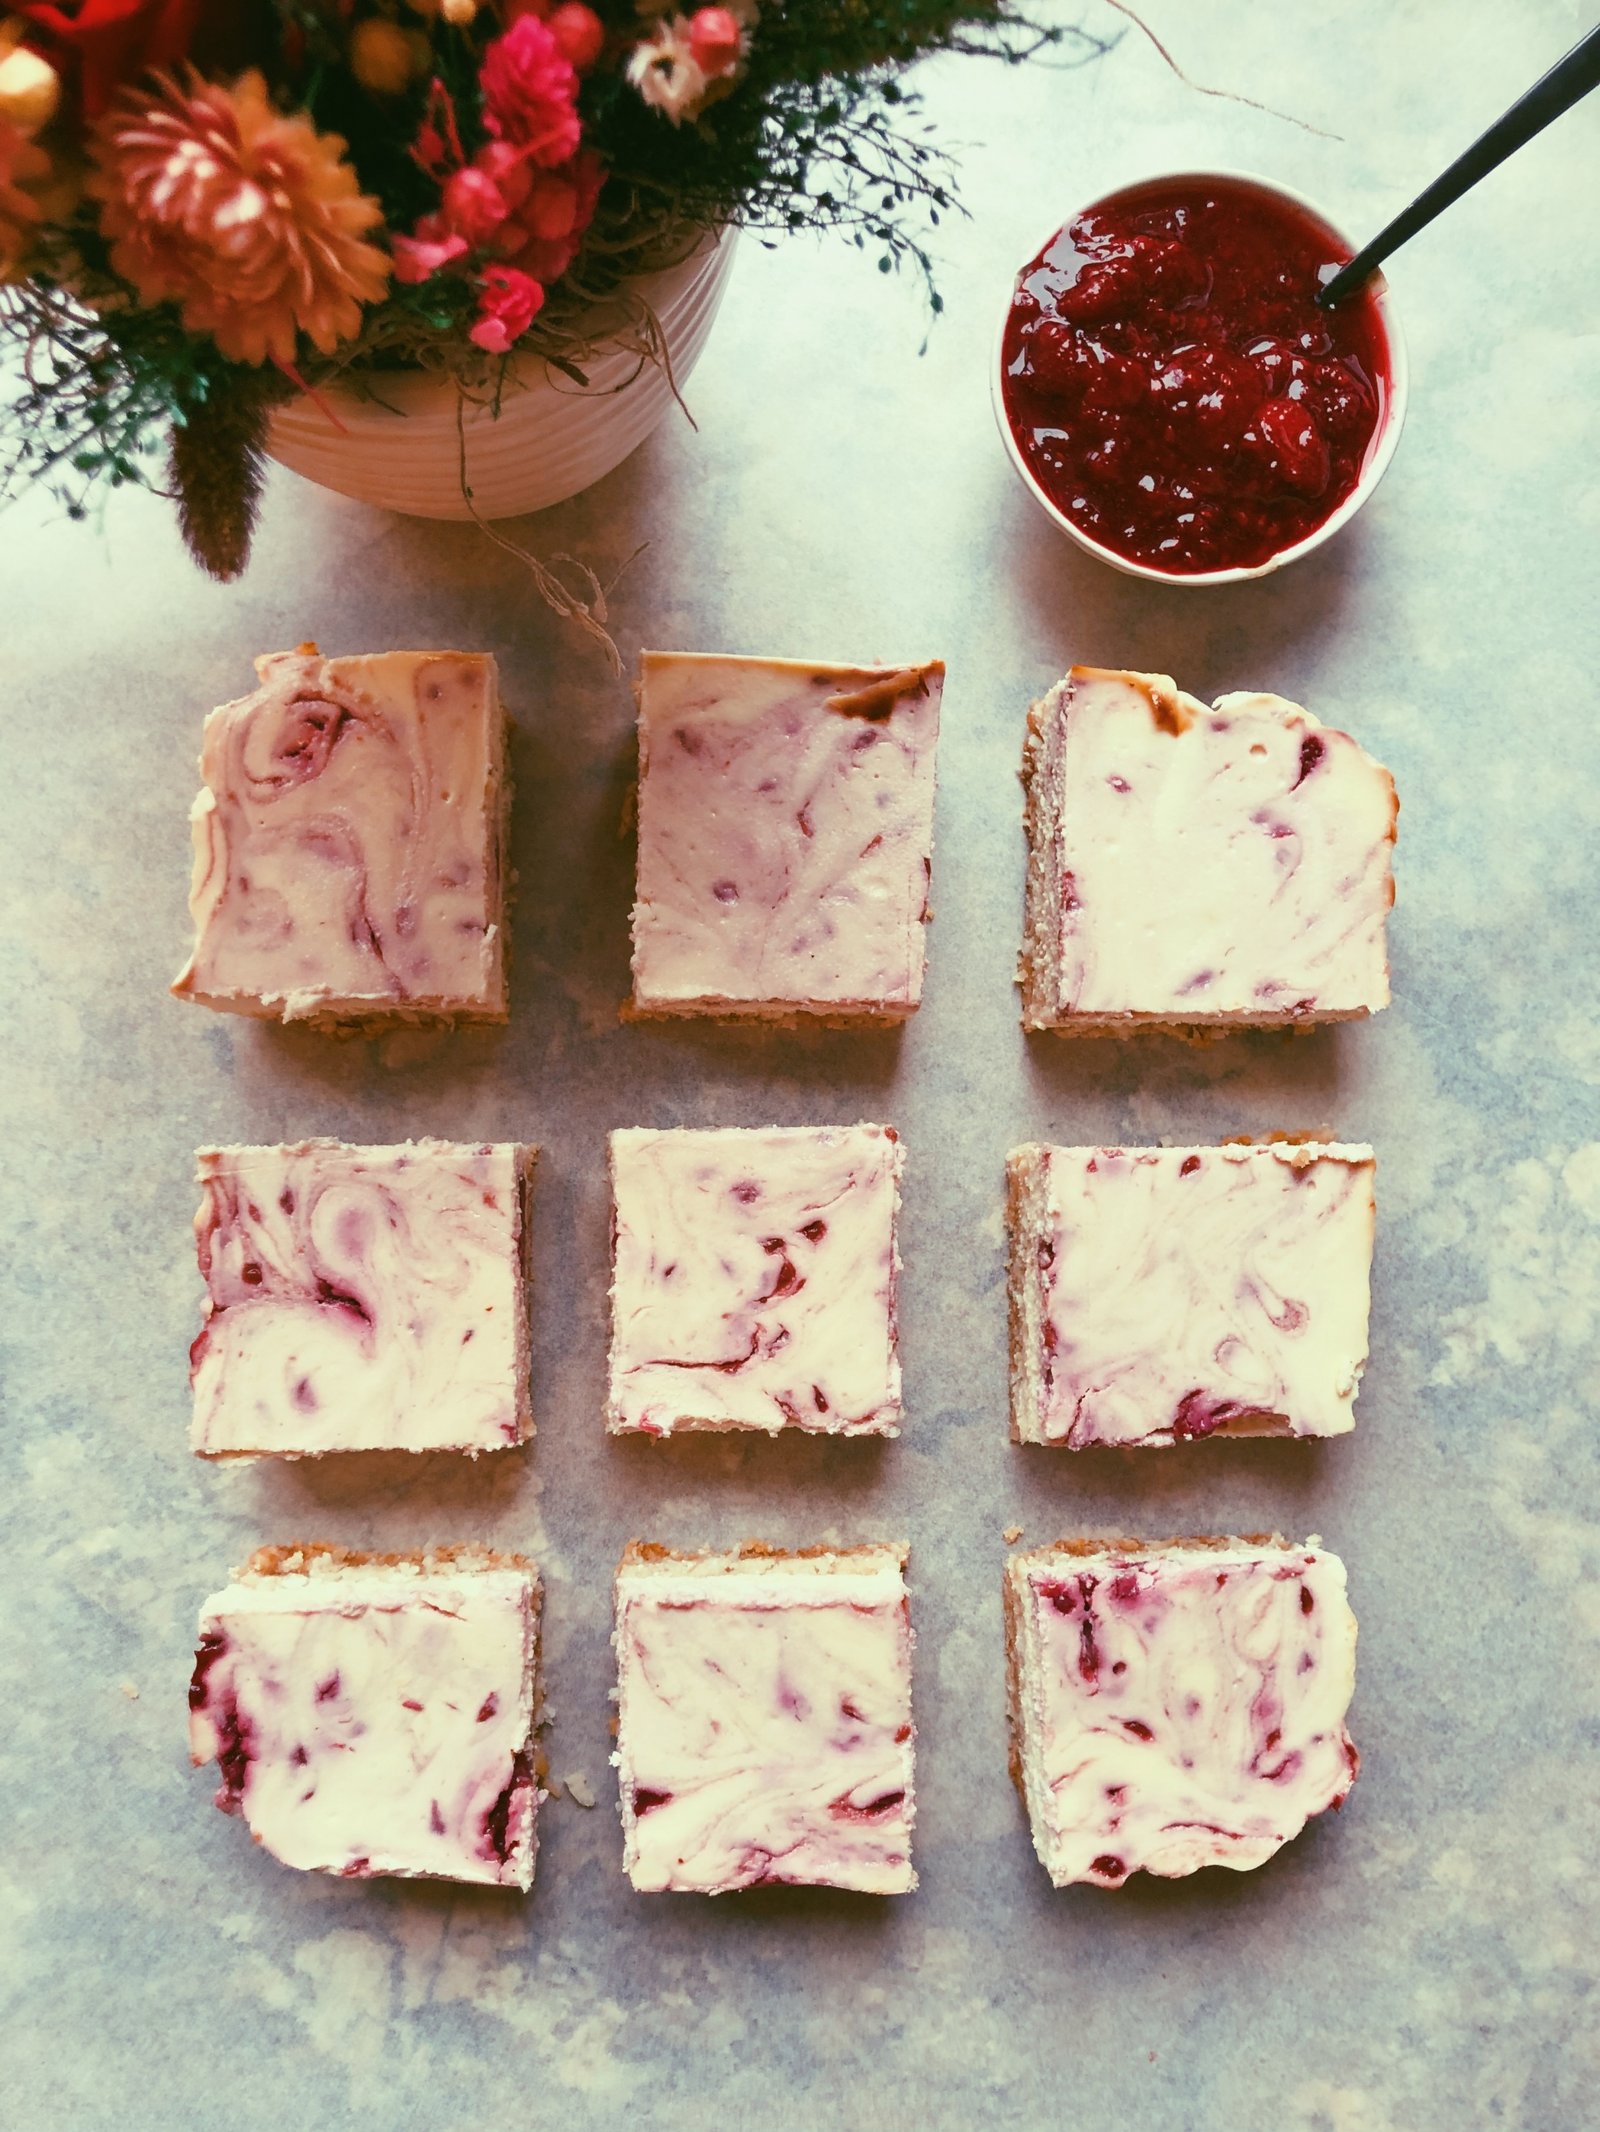 cheesecake raspberry jam swirl bars grain free (scd diet)